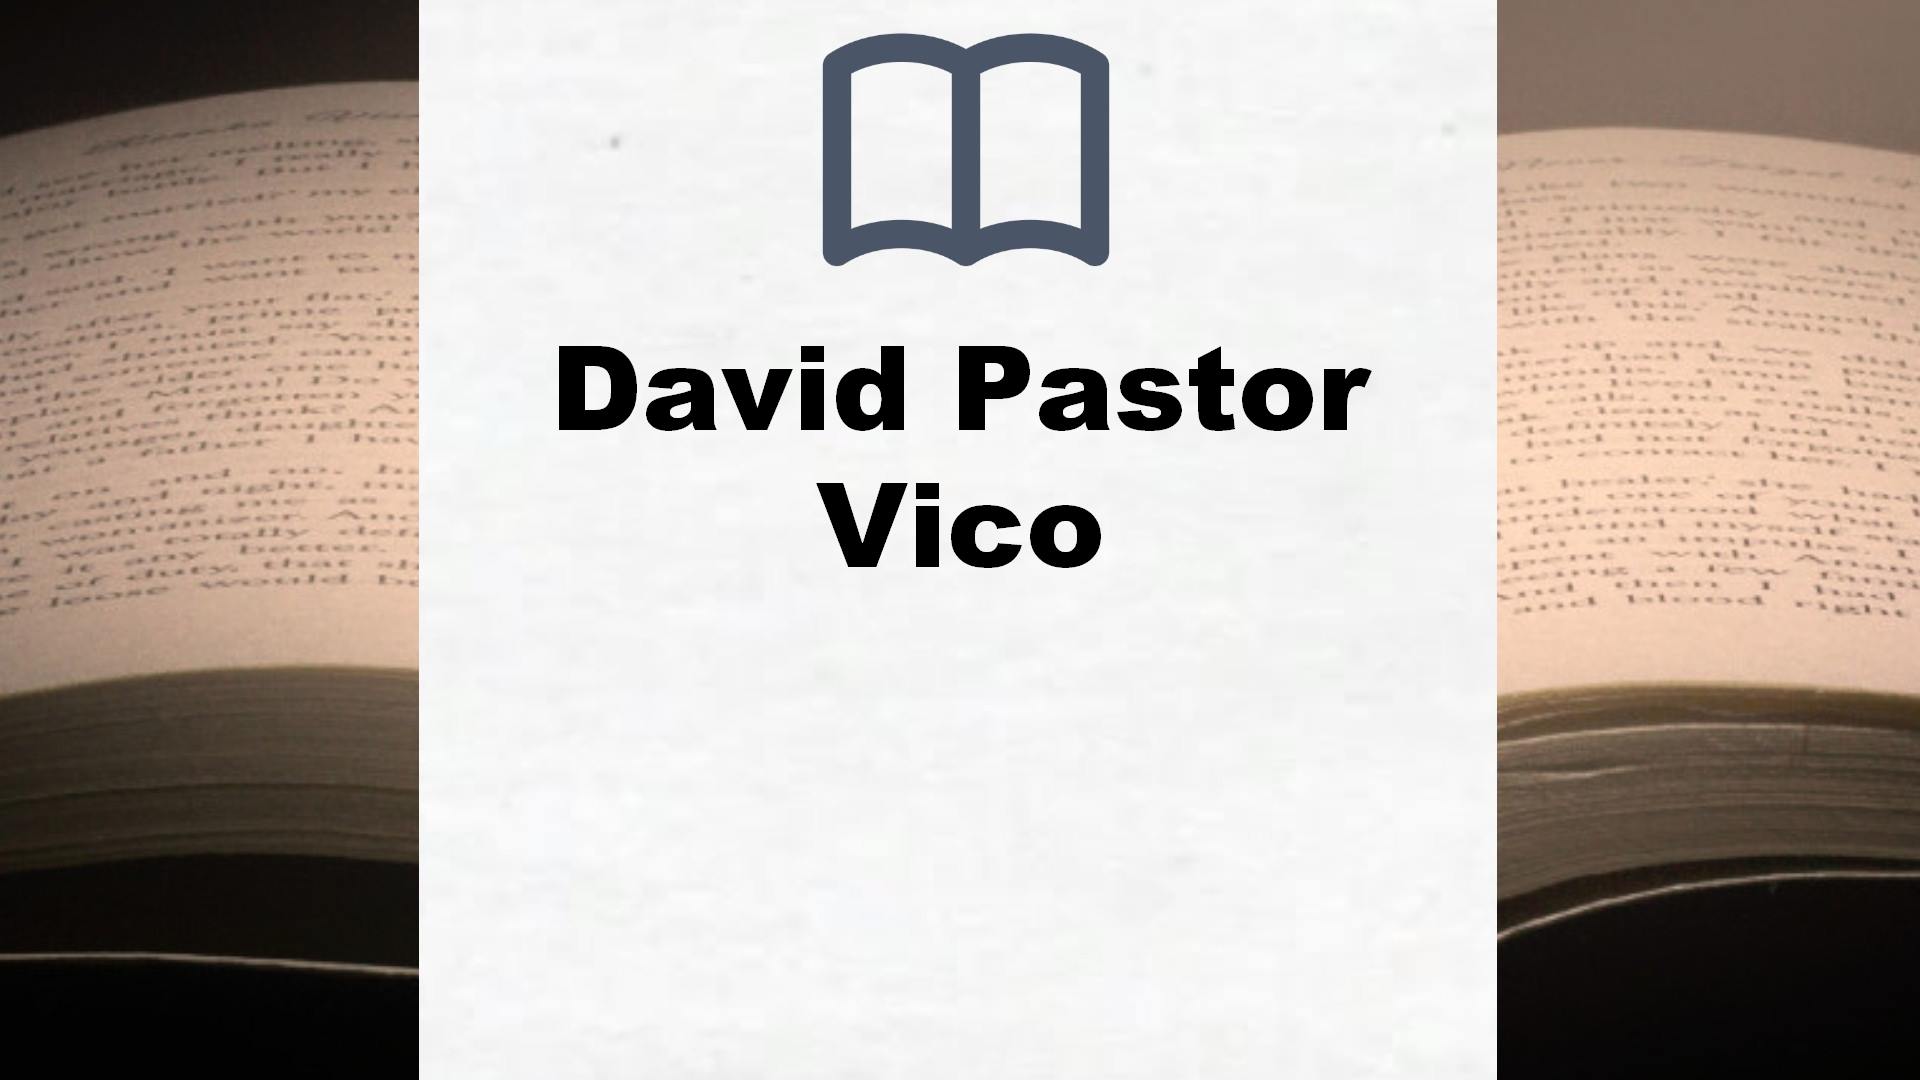 Libros David Pastor Vico